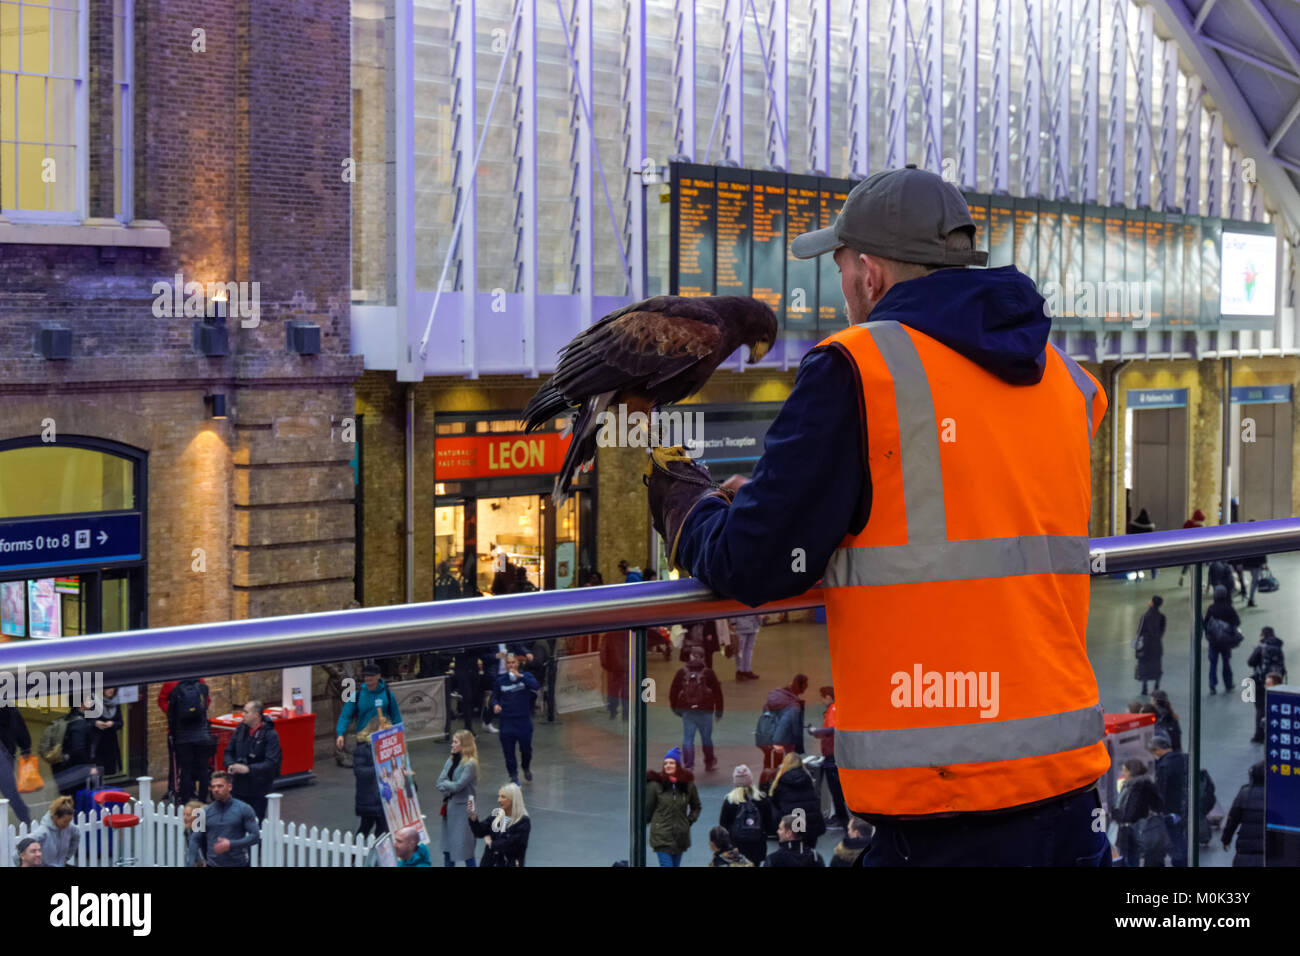 À l'aide d'un homme harris hawk pour le contrôle des parasites à la gare ferroviaire de Kings Cross, Londres Angleterre Royaume-Uni UK Banque D'Images